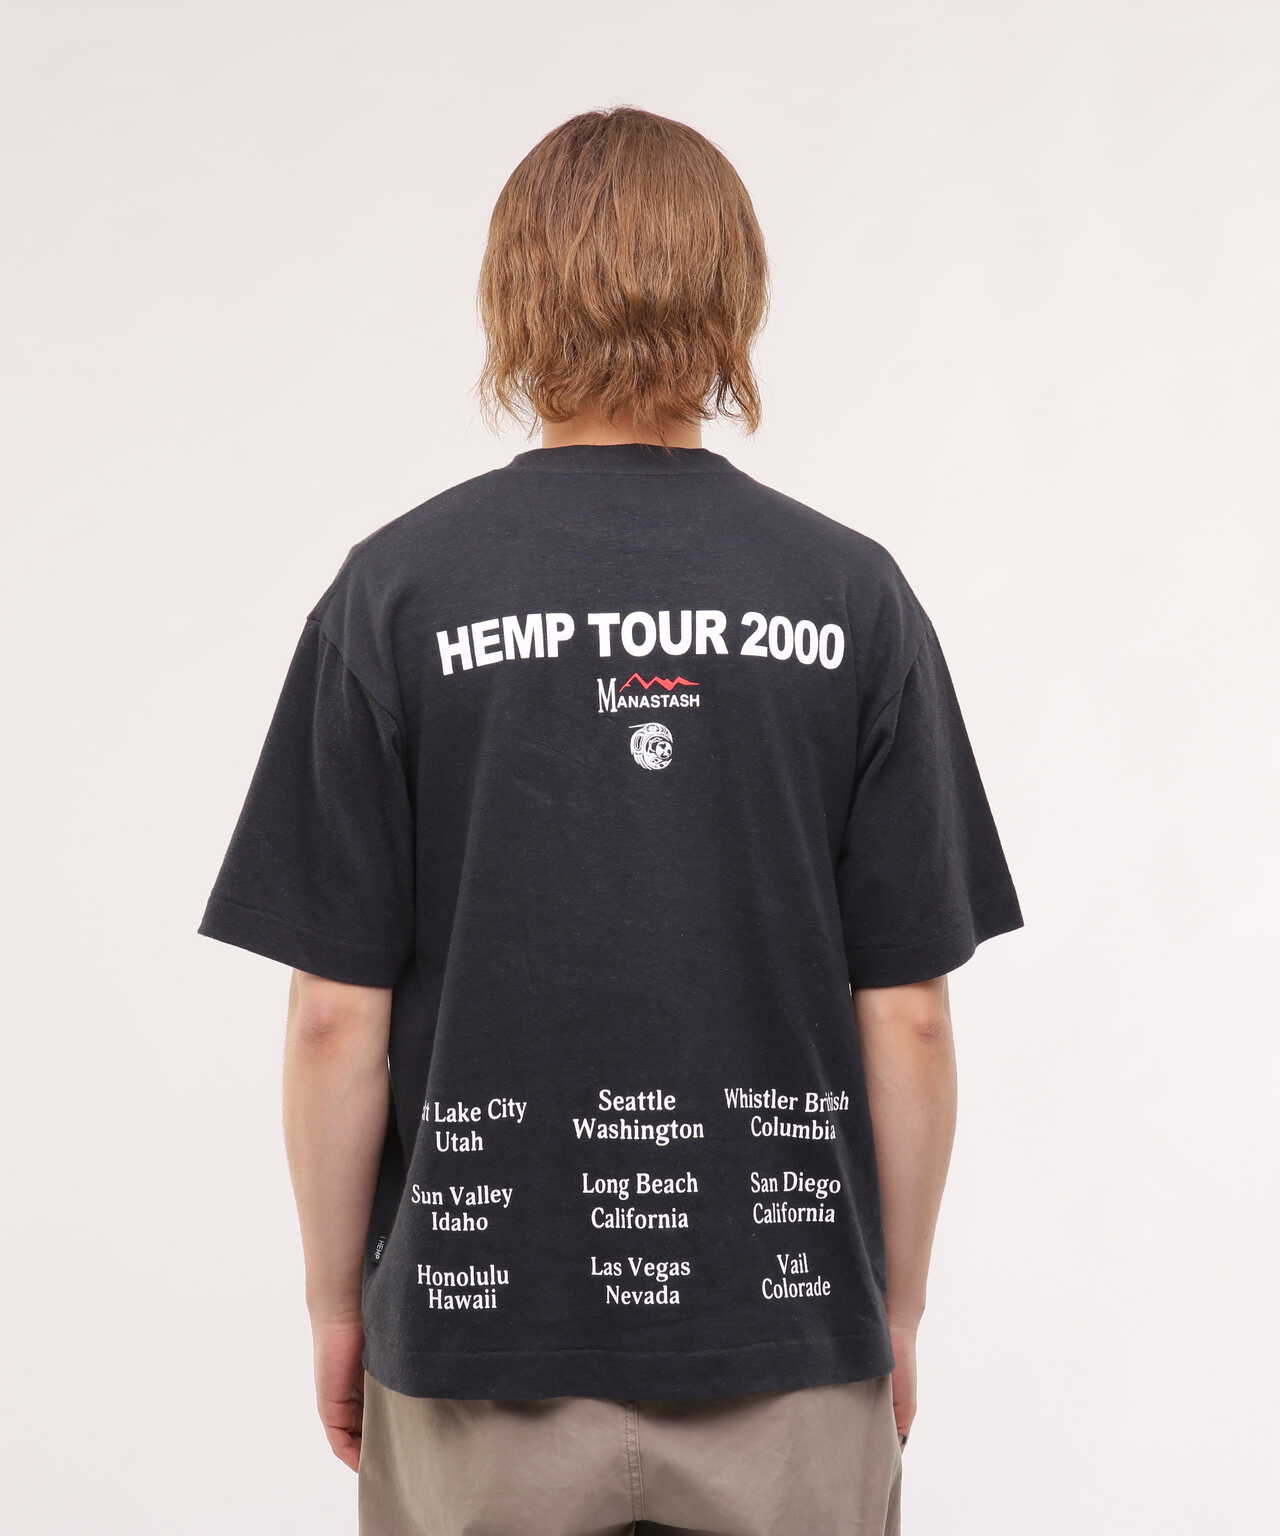 MANASTASH/マナスタッシュ/HEMP TEE TOUR 2000